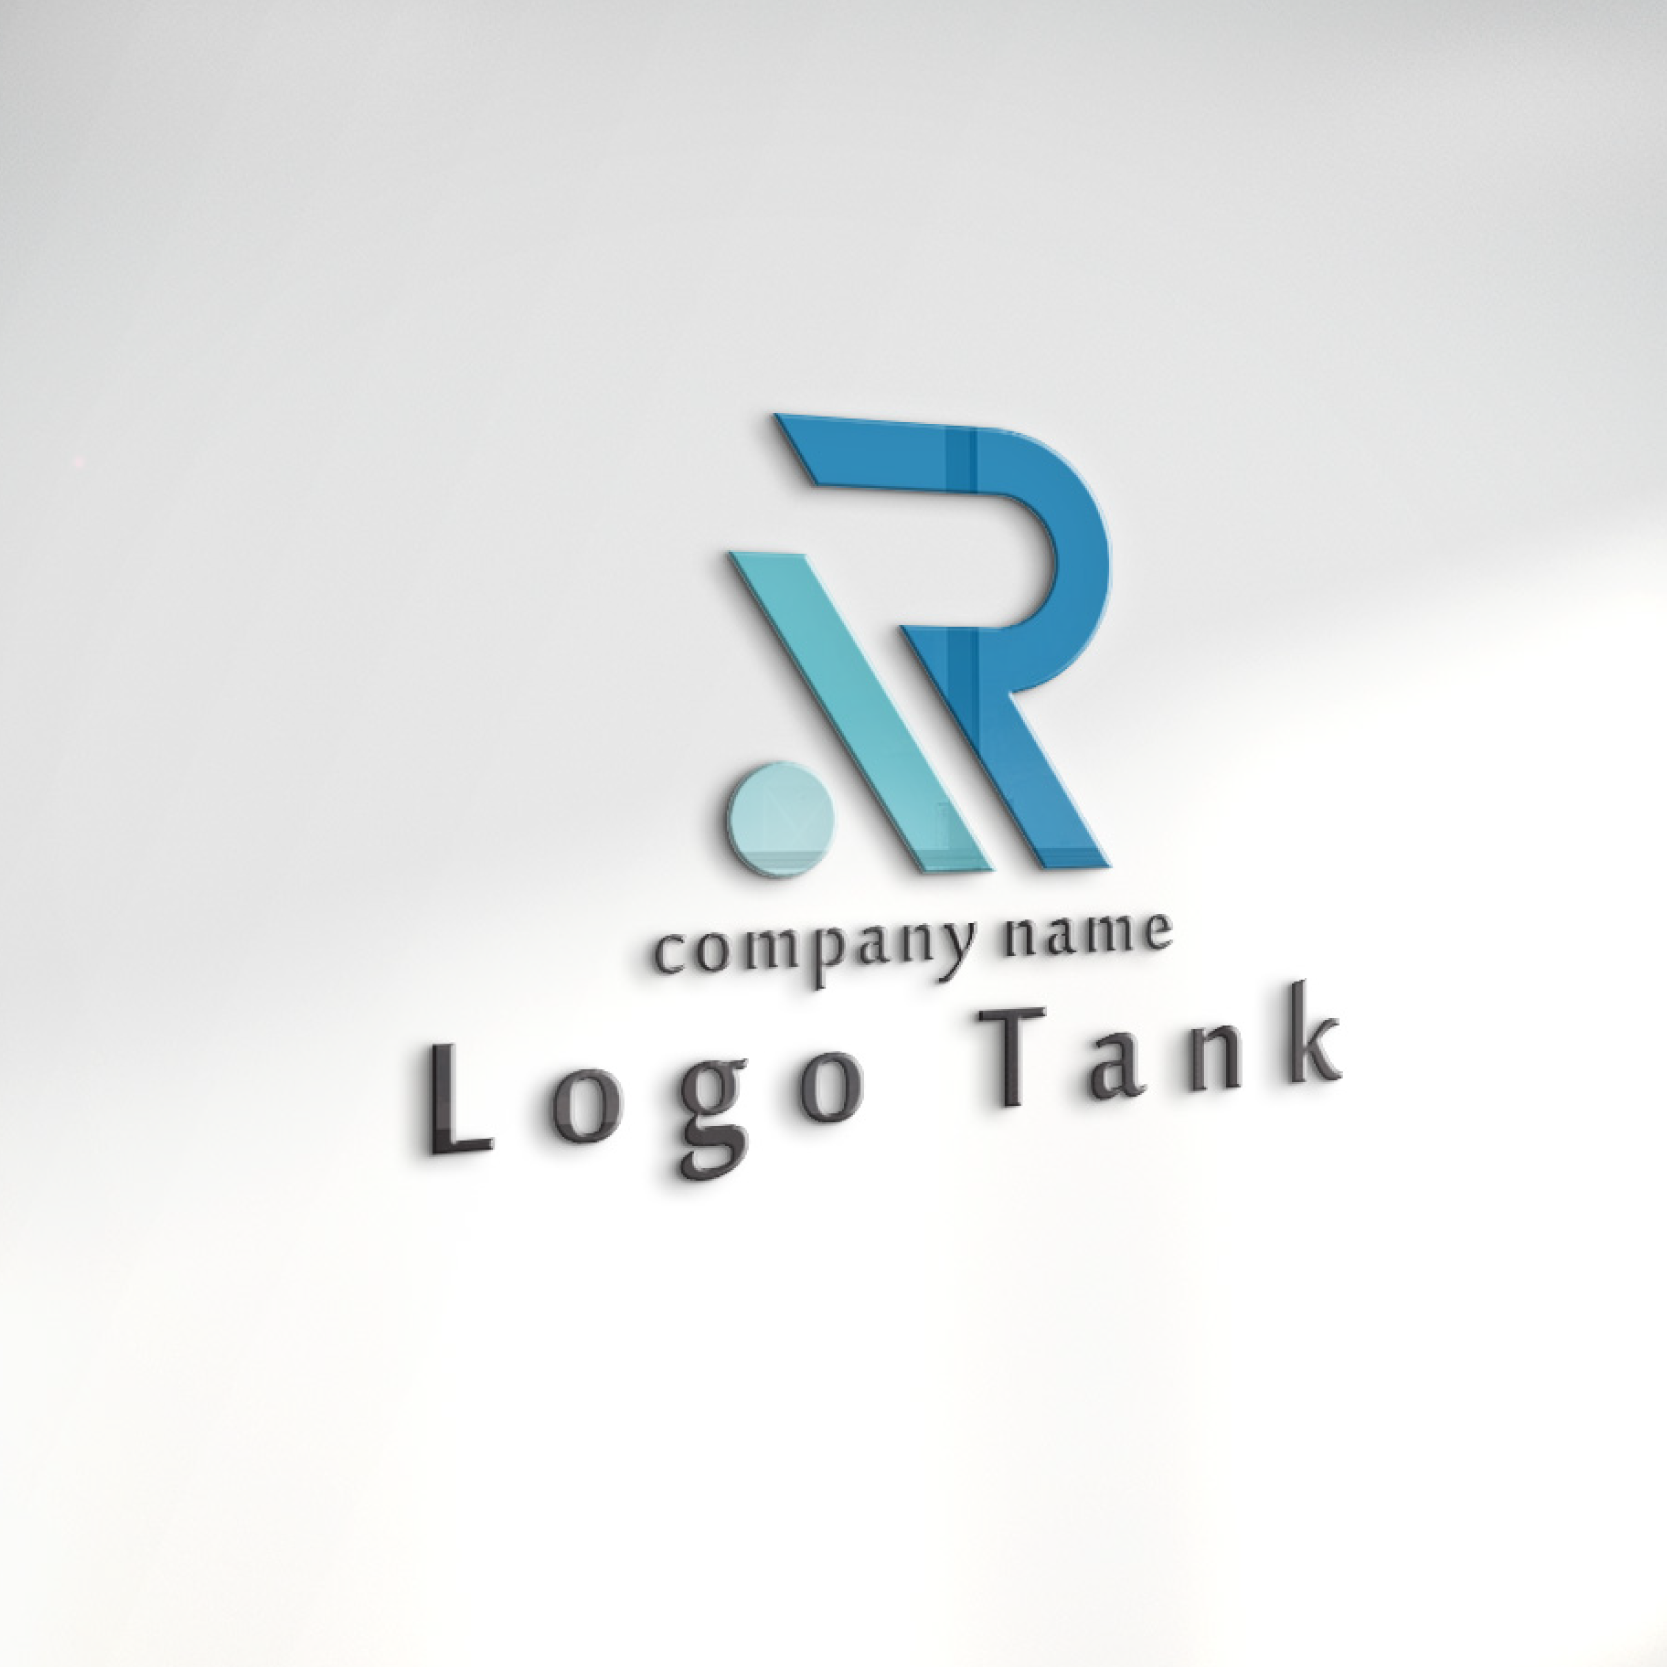 ロゴでカルプ看板を作成したイメージ | 「R」と「躍進・調和・誠実」をモチーフにしたロゴ